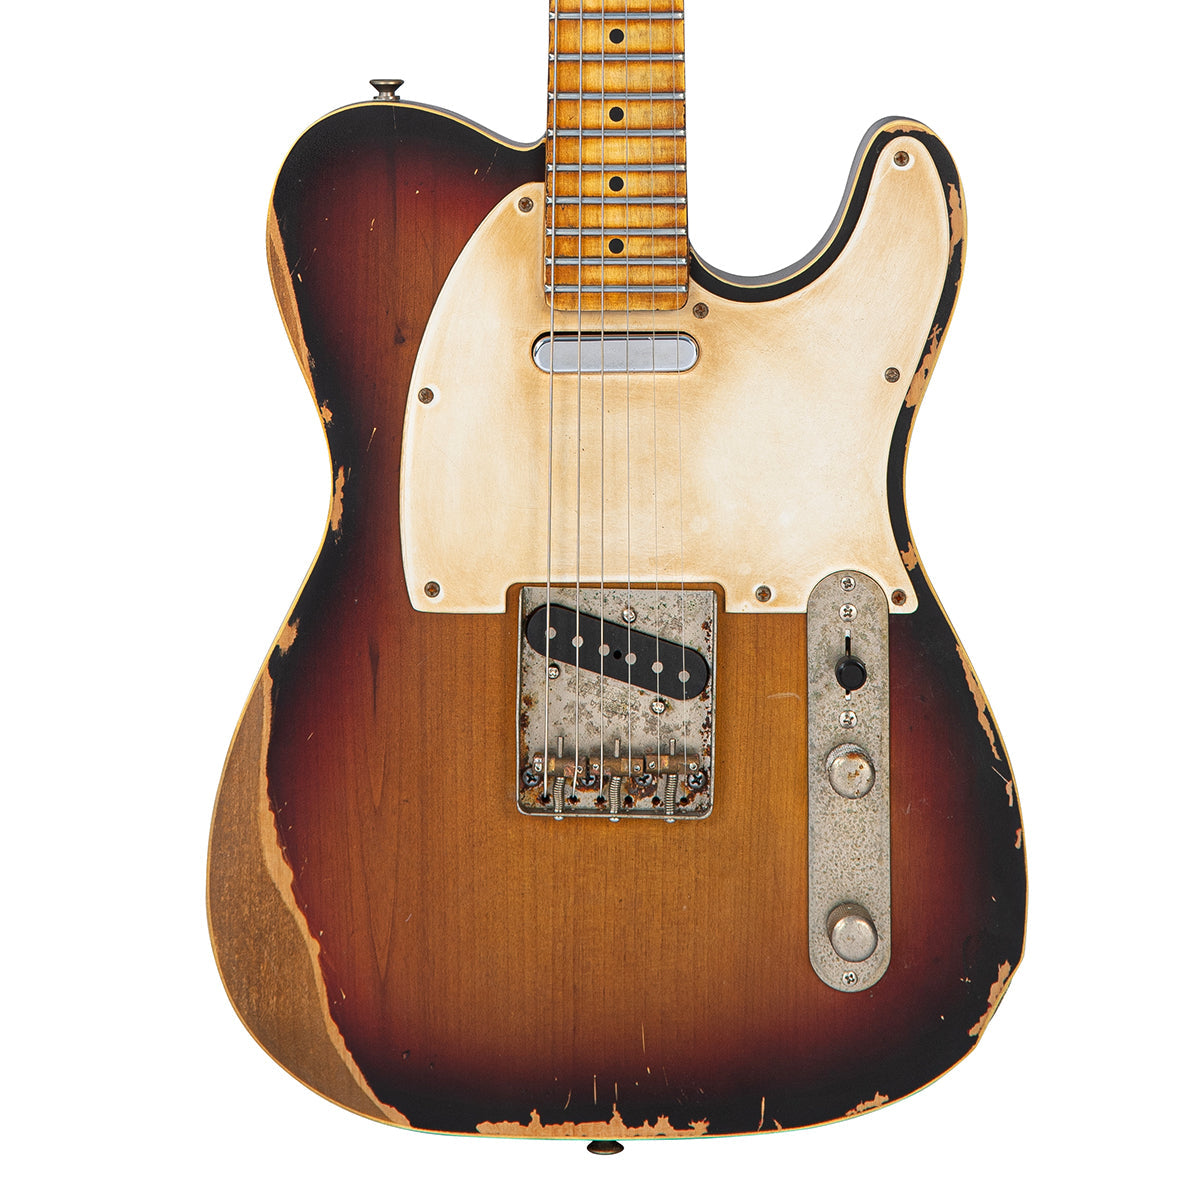 Vintage V59 ProShop LTD ~ Distressed Tobacco Sunburst (2 of 3), Electric Guitars for sale at Richards Guitars.